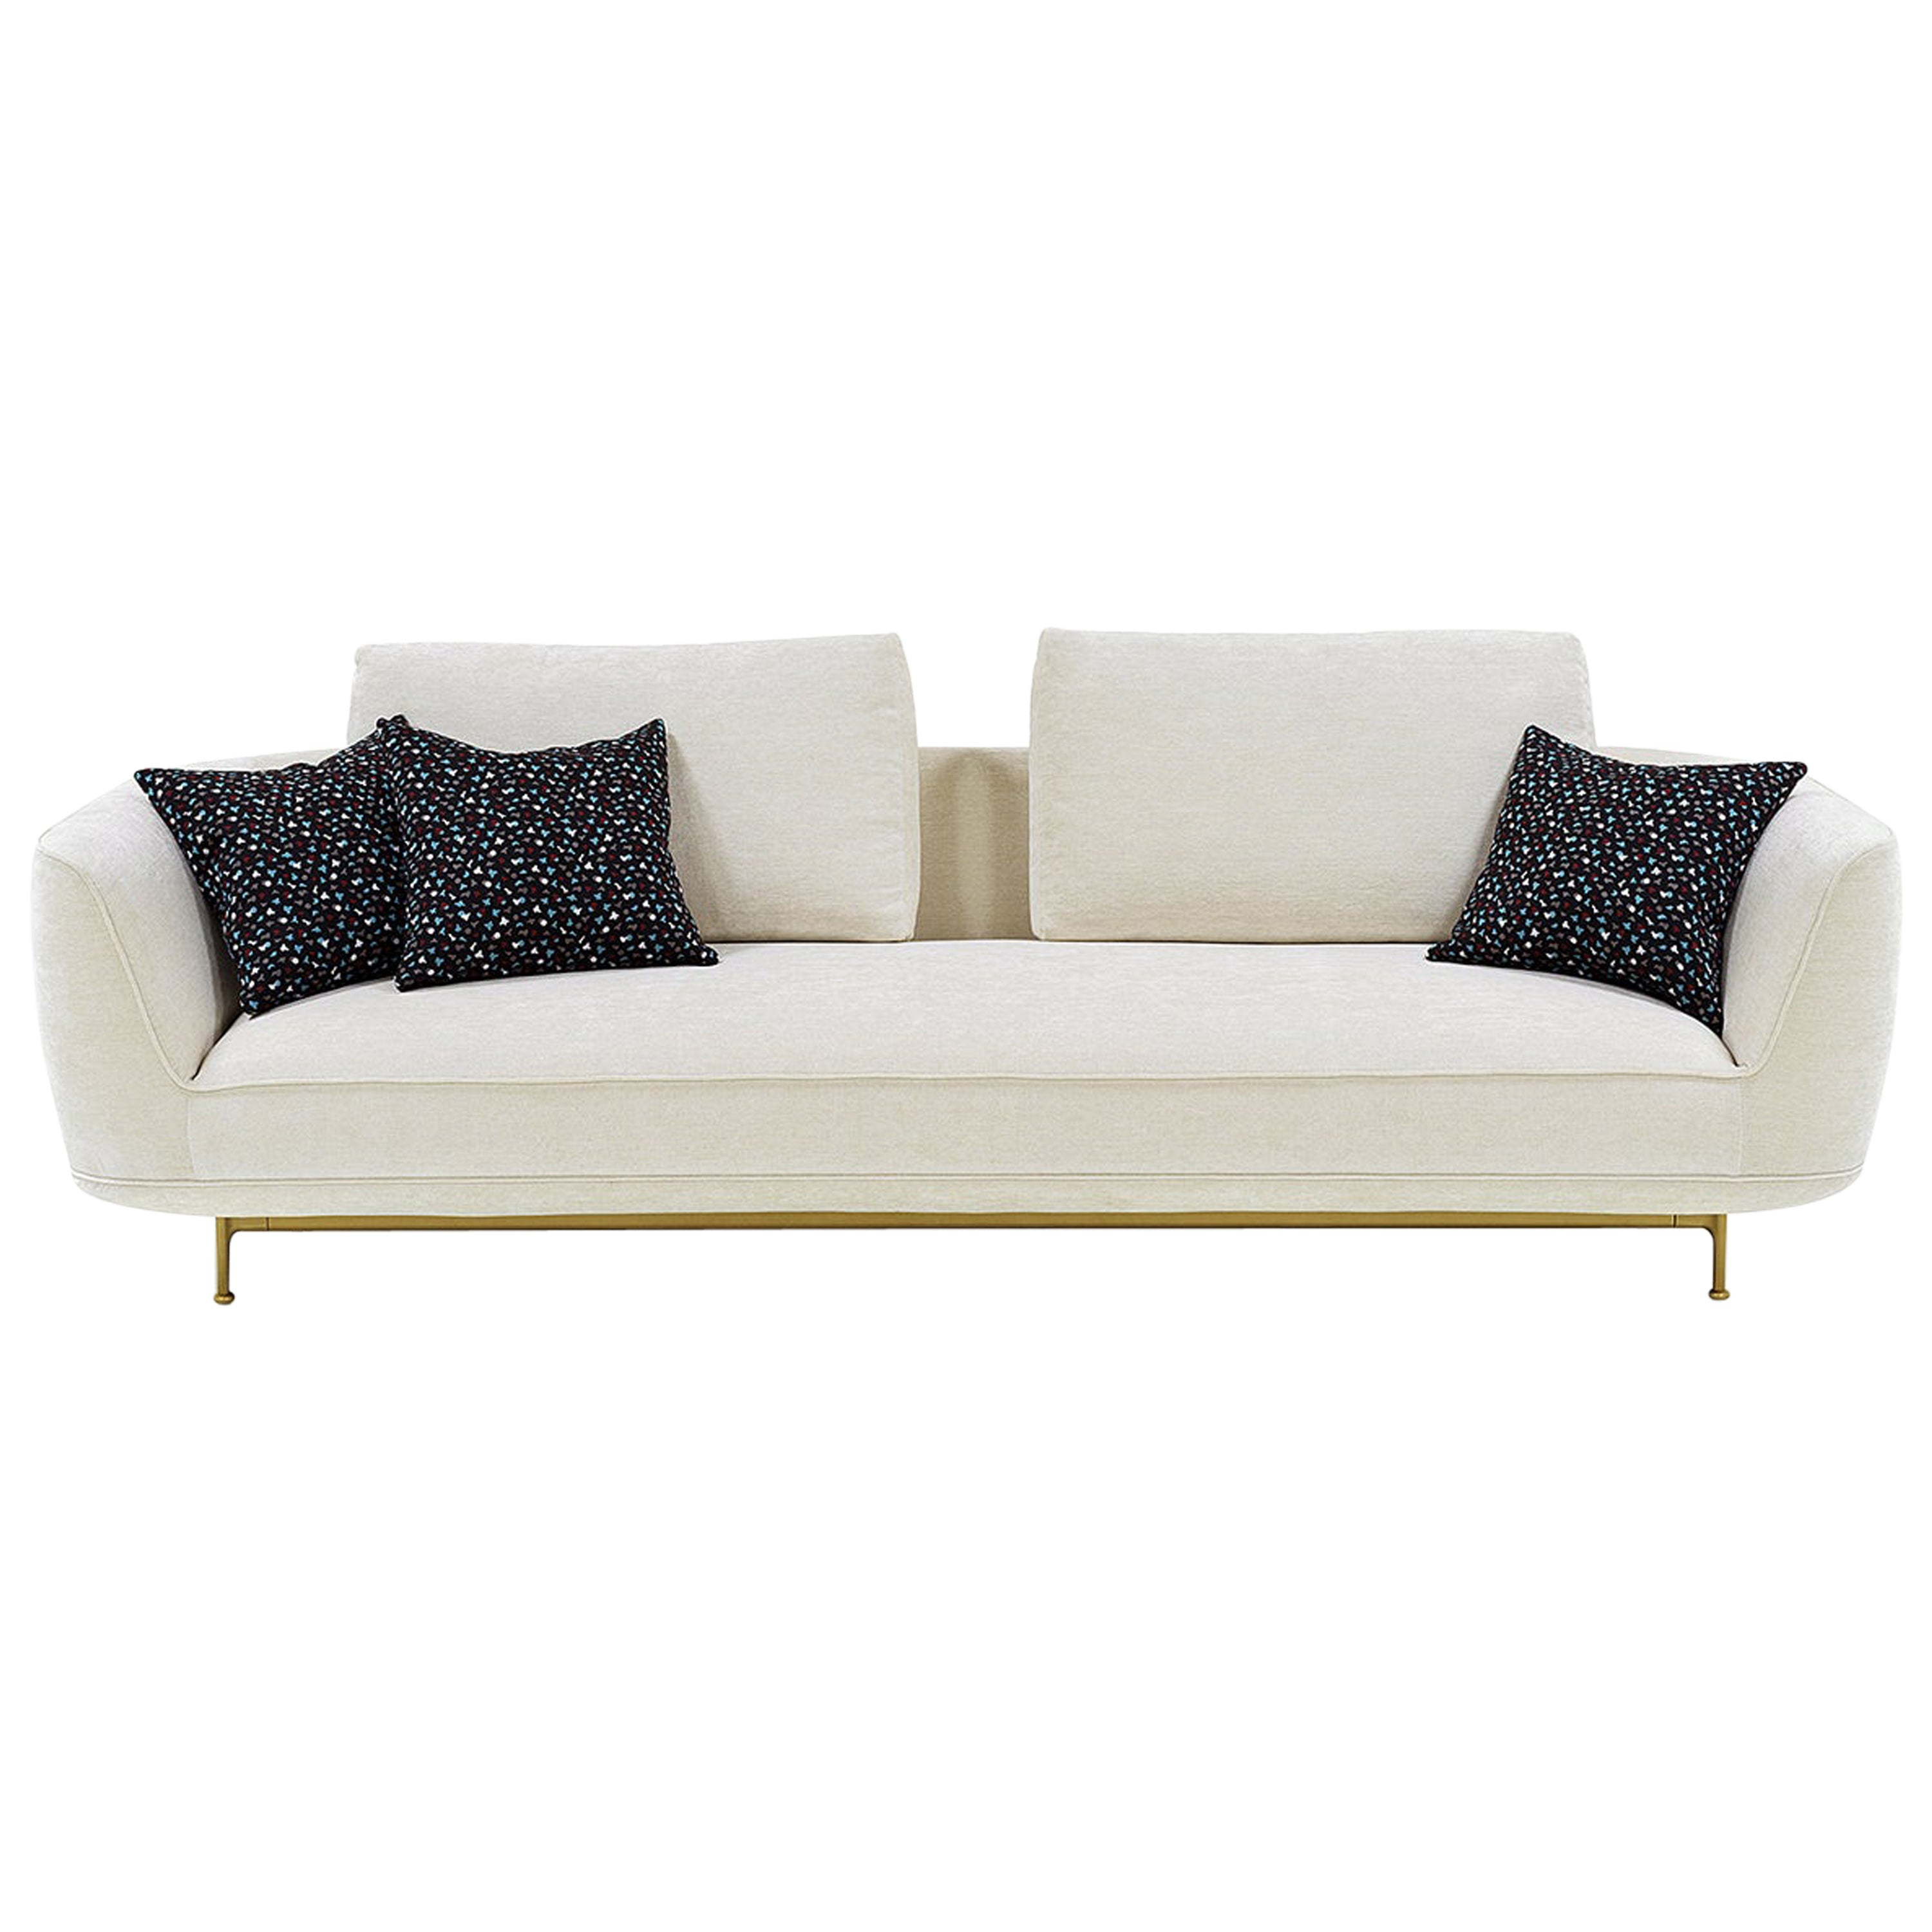 Anpassbares Wittmann Andes-Sofa entworfen von Luca Nichetto